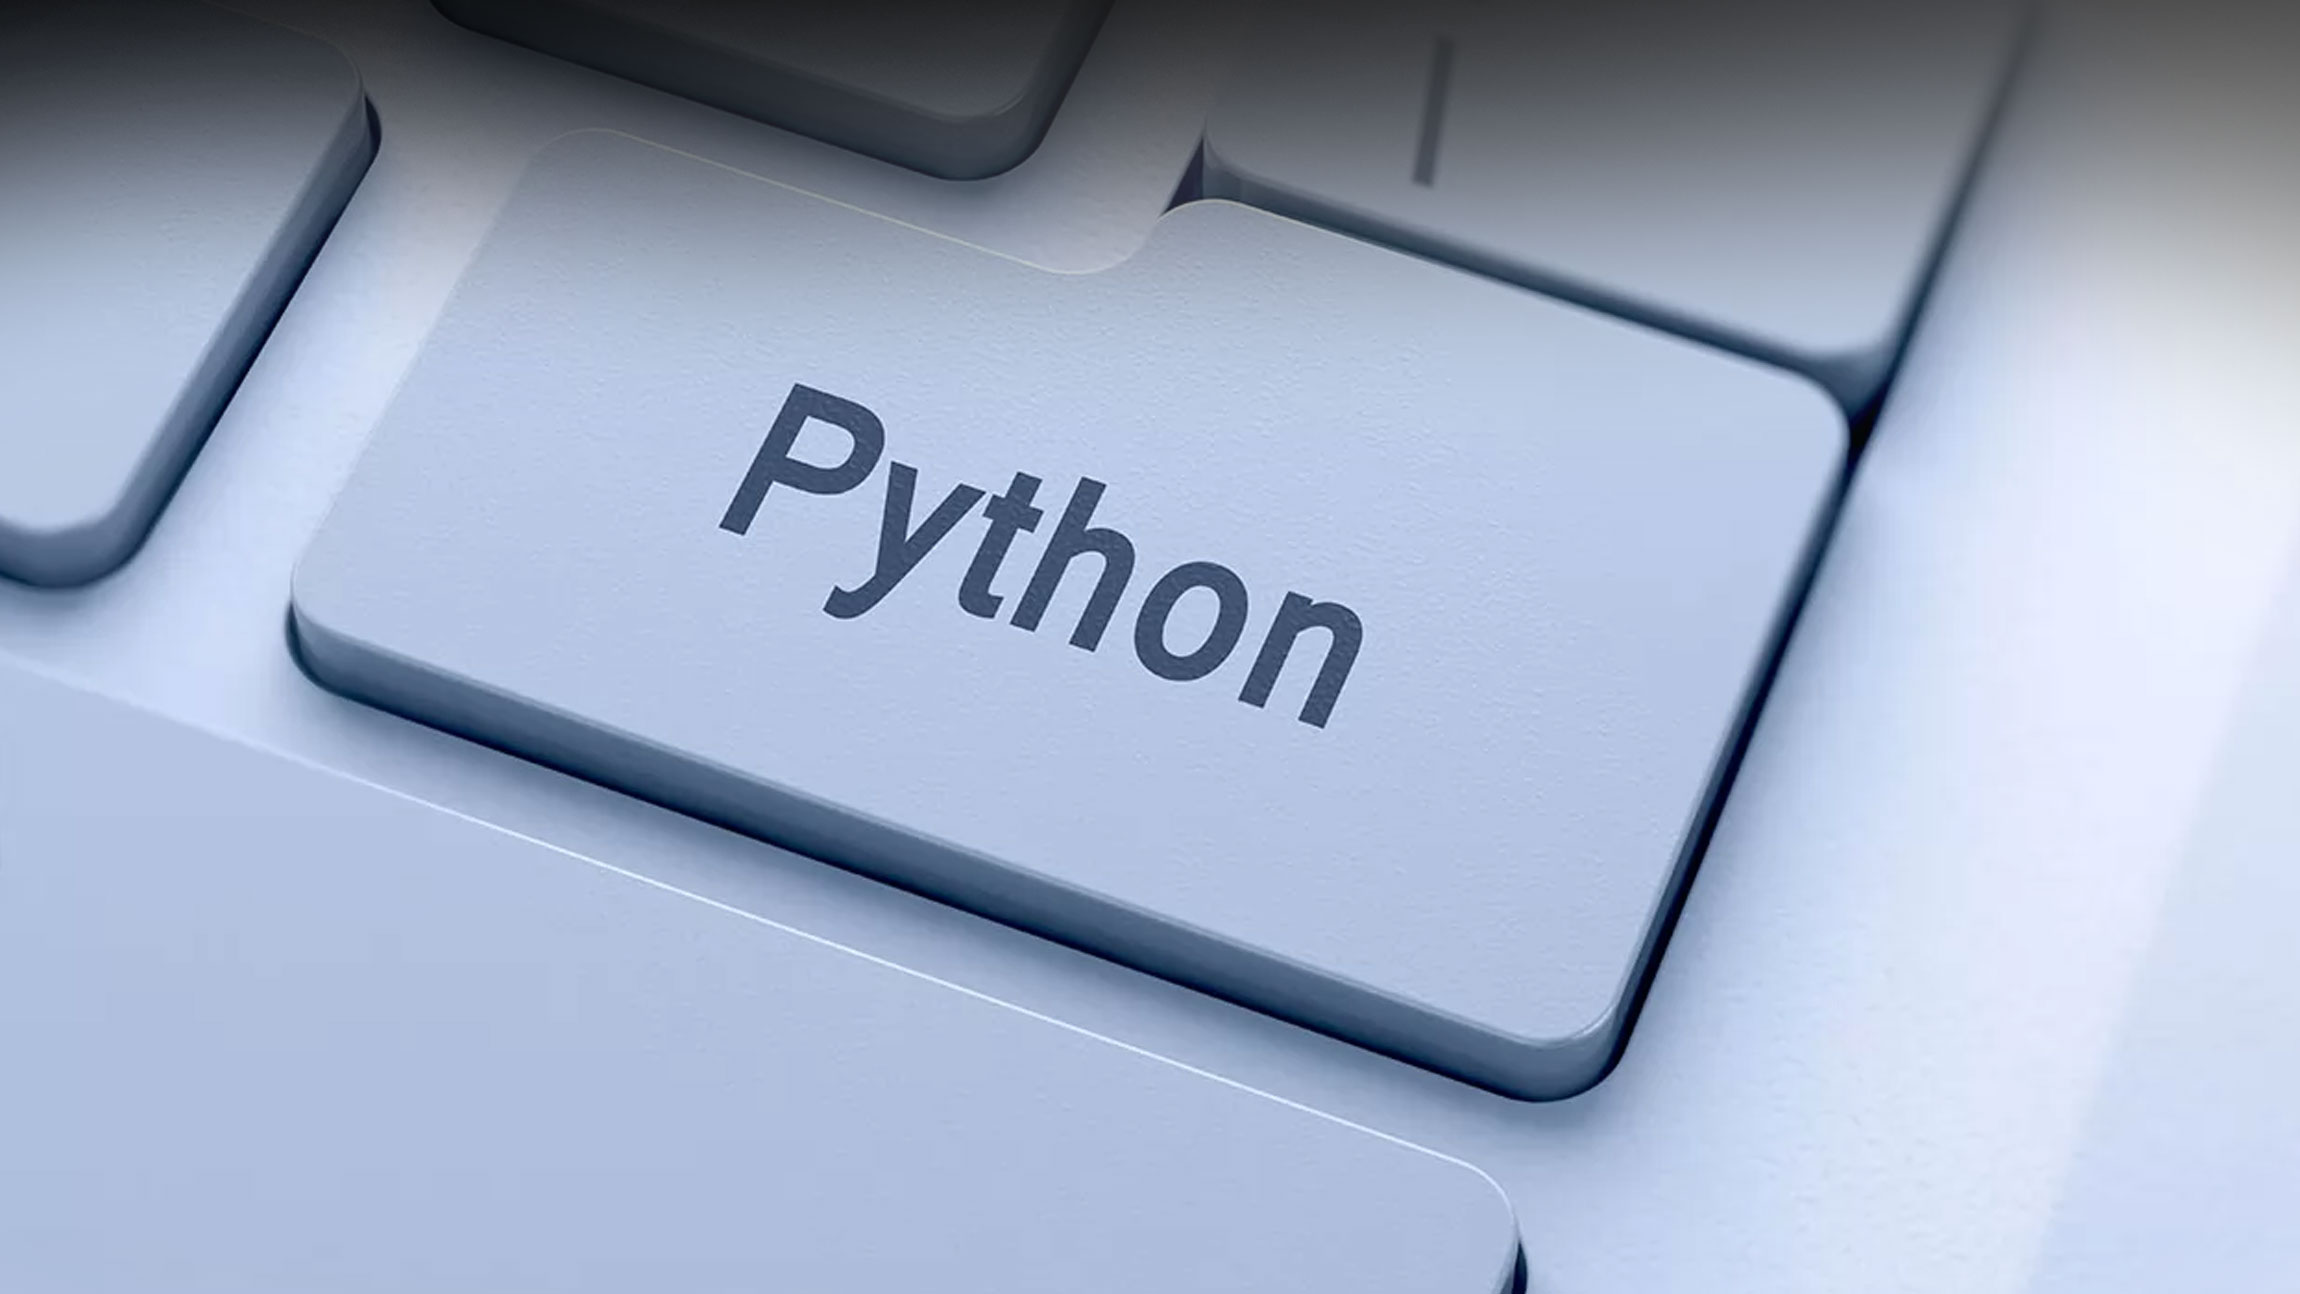 Библиотека wikipedia python. Библиотеки Пайтон. Python. Python Library. Питон библиотека Math.